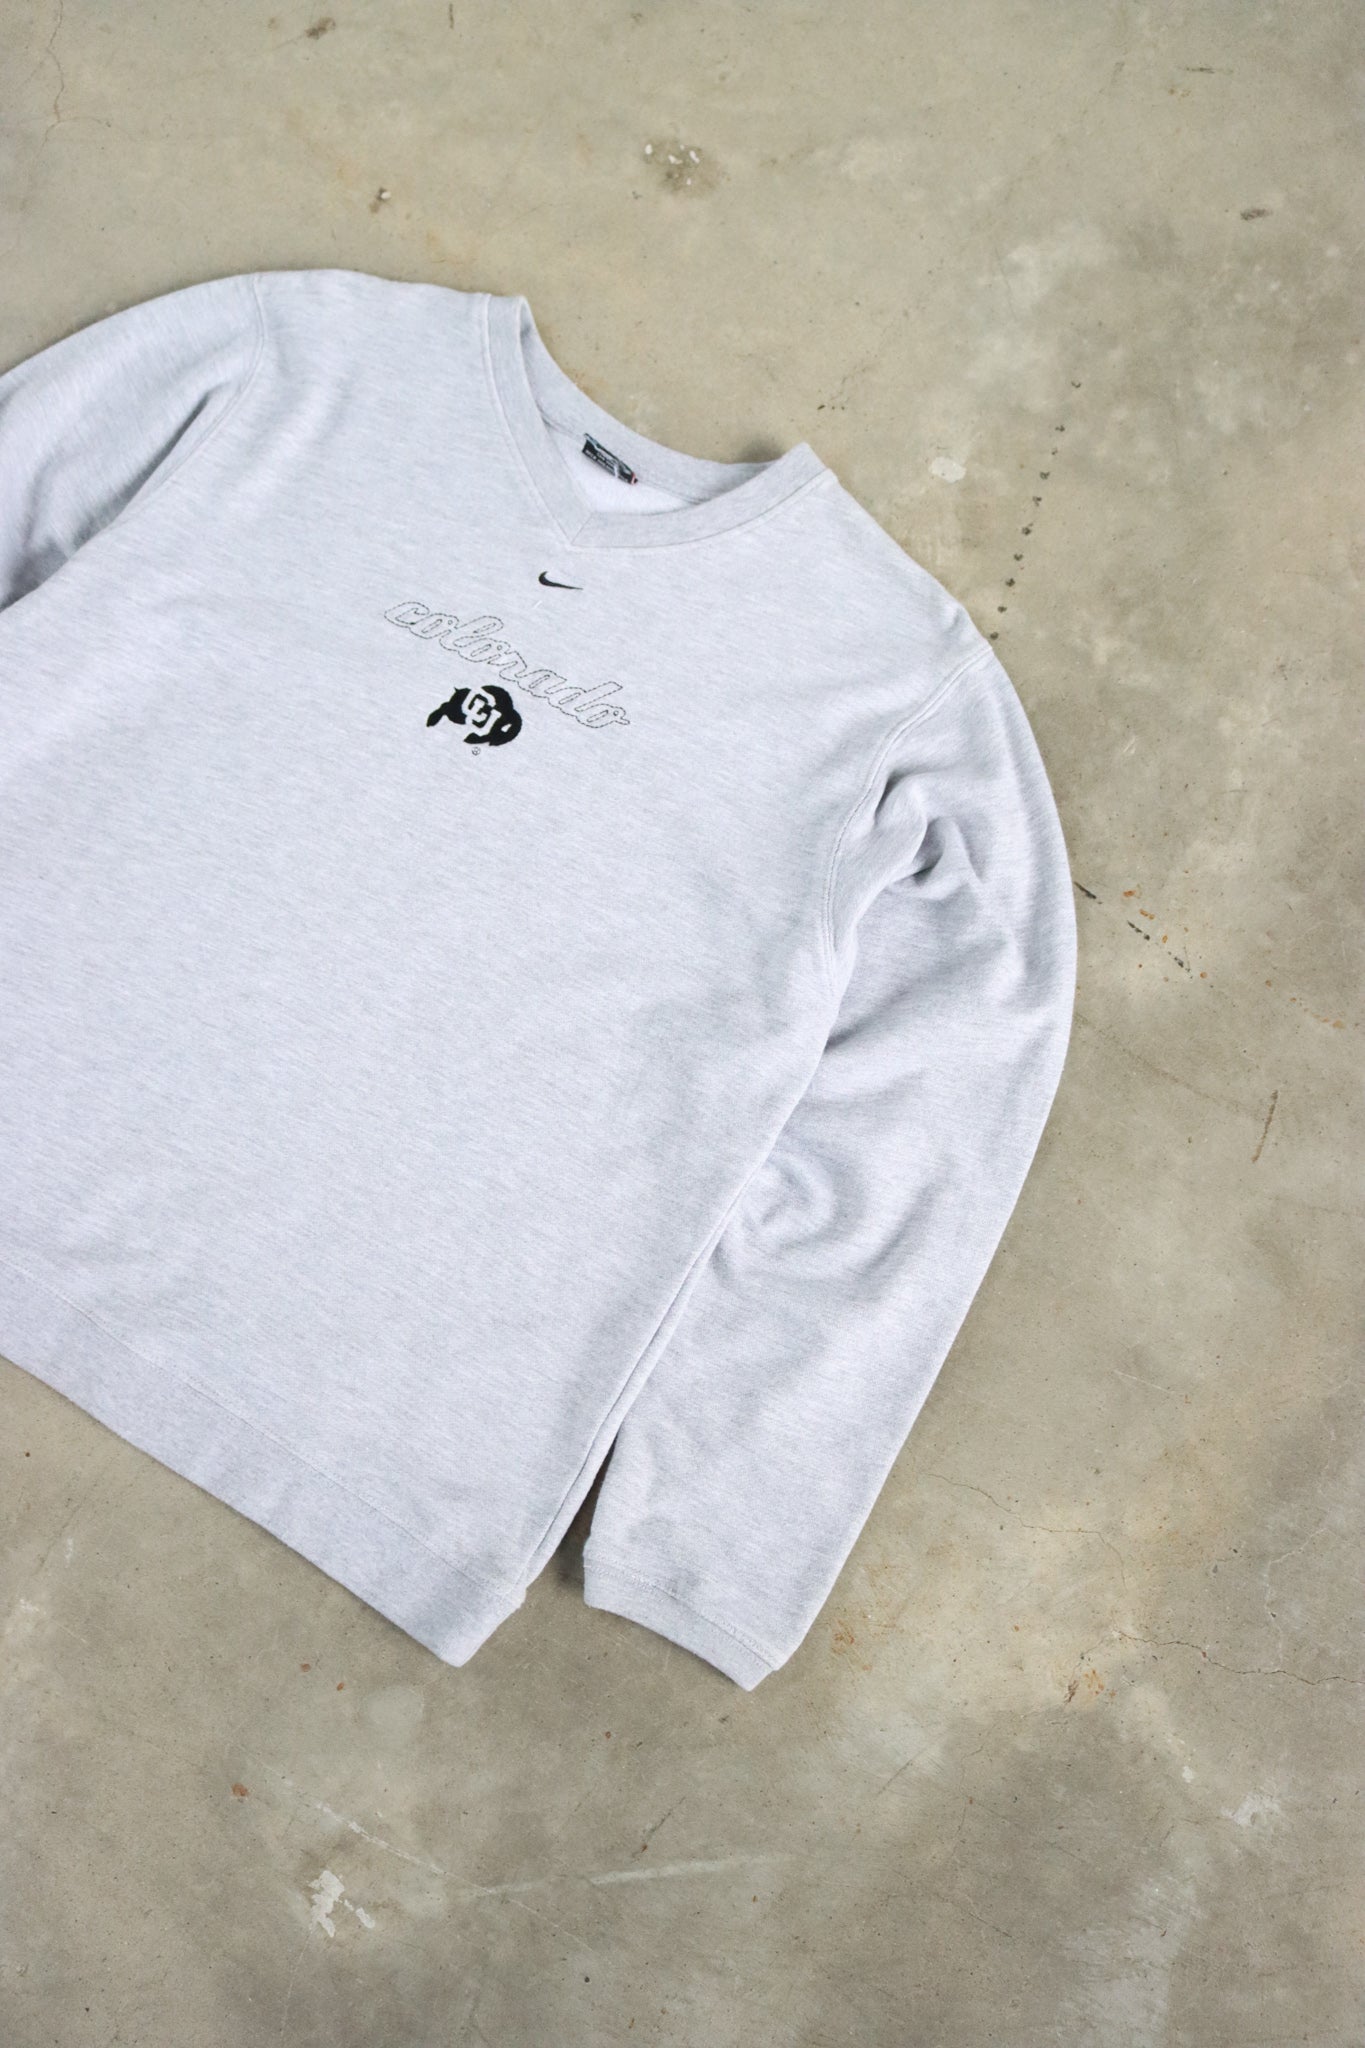 Vintage Nike Colorado University Sweater Small